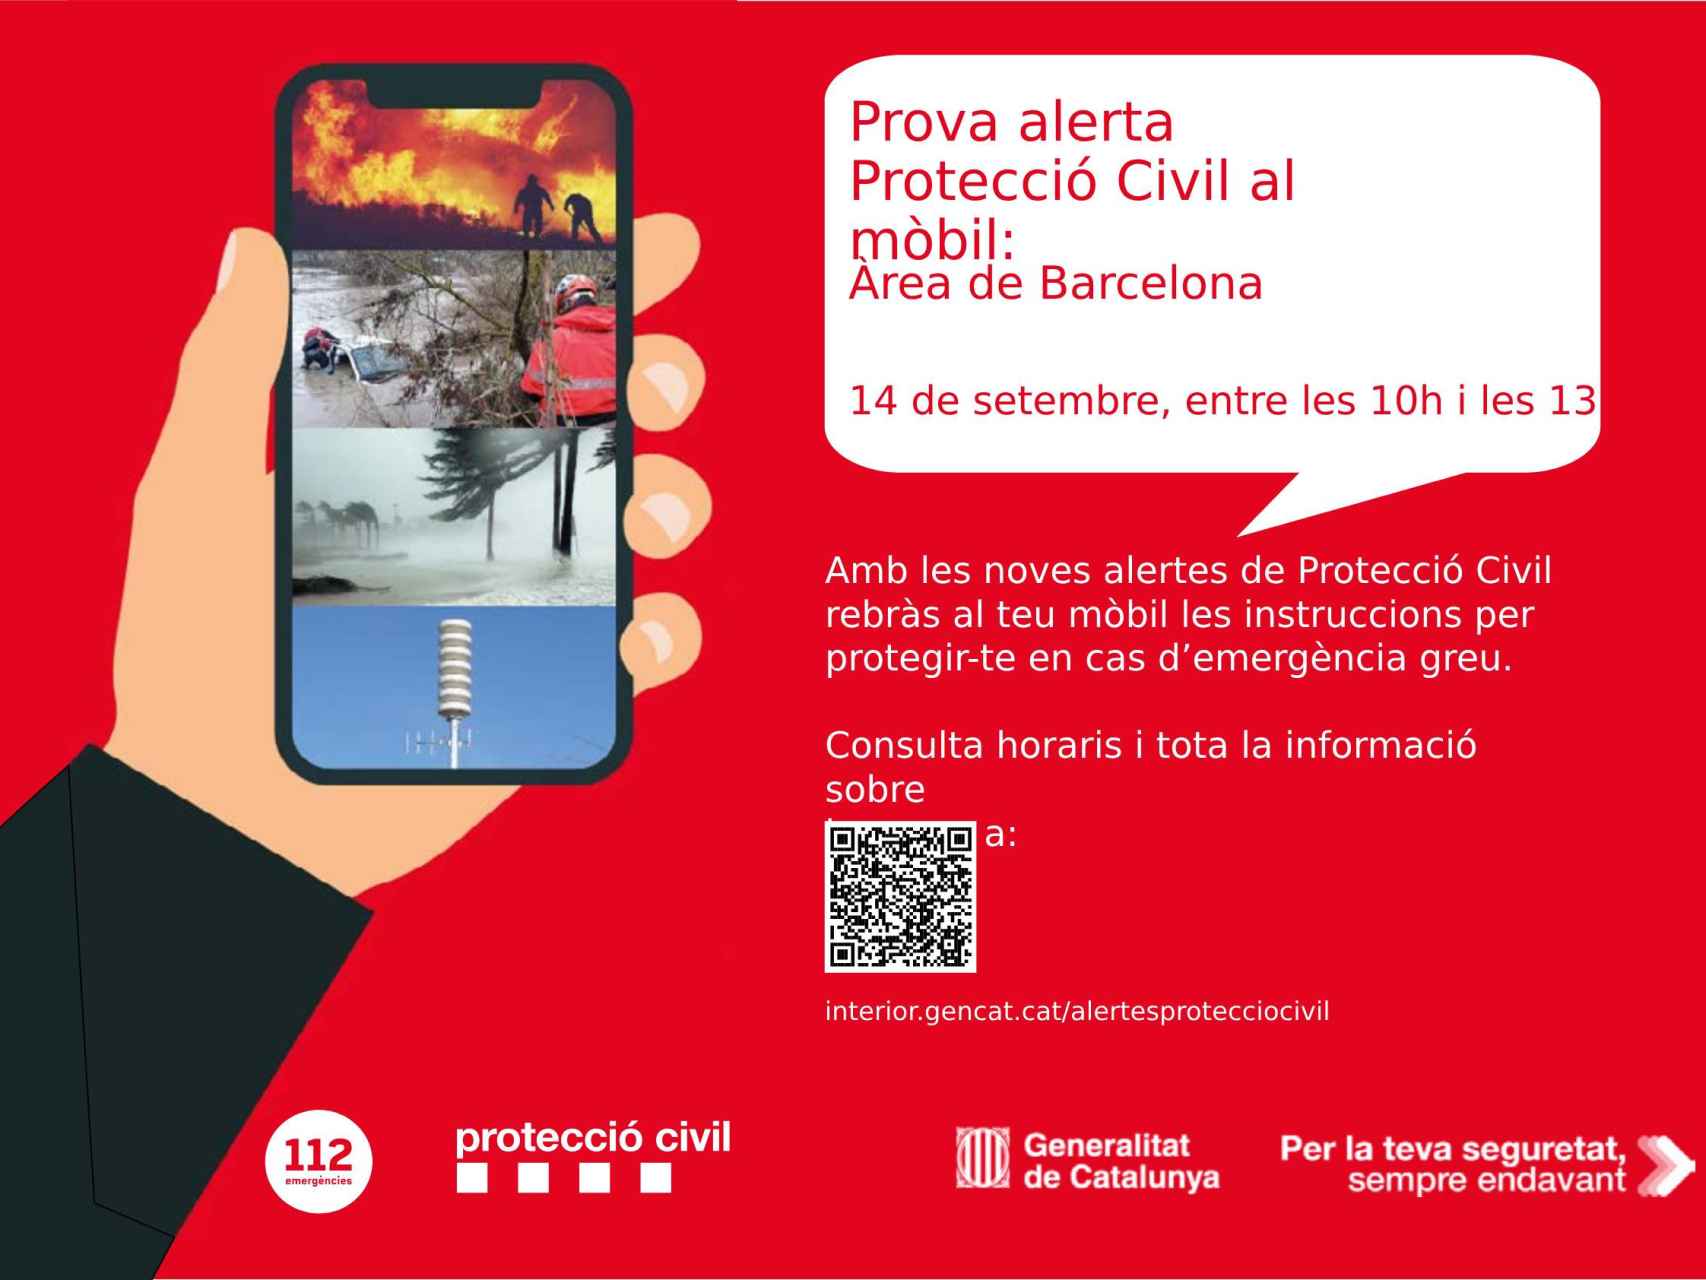 Los teléfonos móviles del área de Barcelona recibirán un mensaje de alerta de prueba este jueves, 14 de septiembre